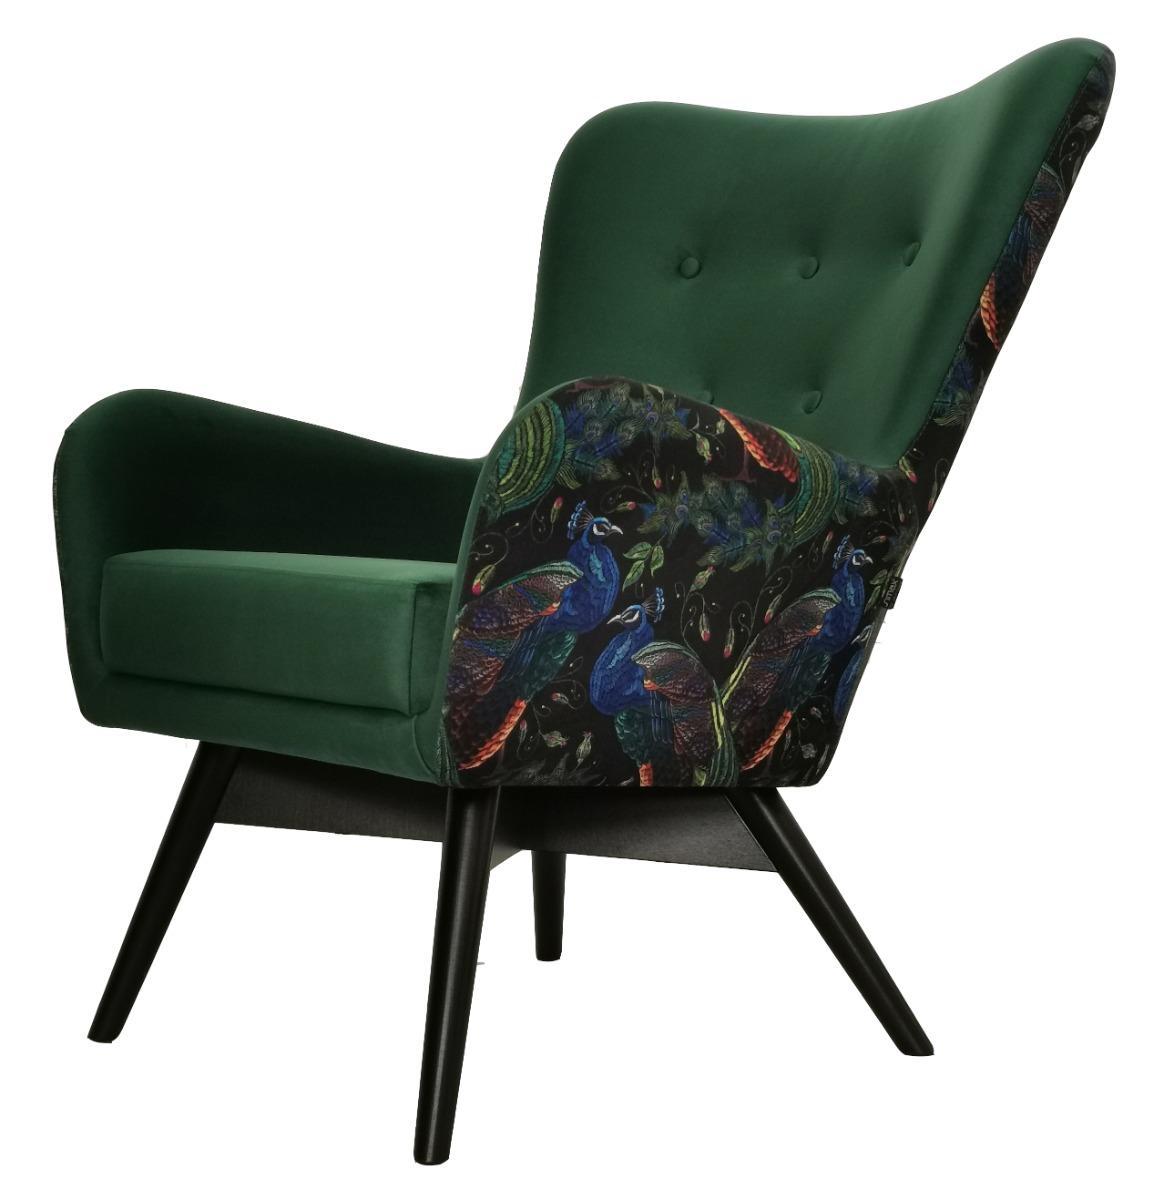 Fotel skandynawski GRANDE 80x93x80 cm zielony we wzory pawie do salonu 0 Full Screen